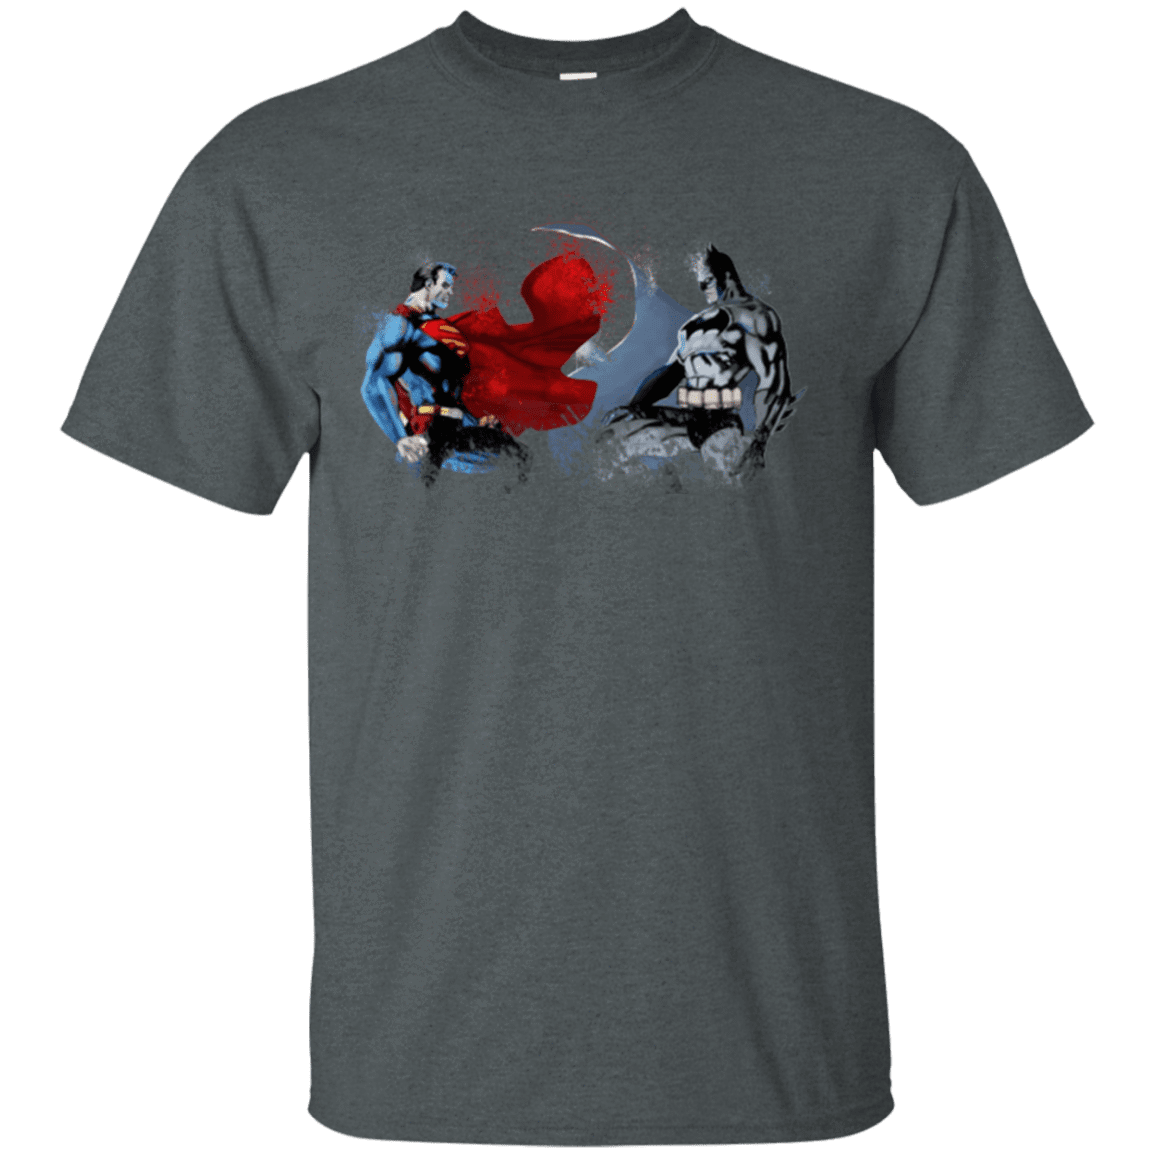 T-Shirts Dark Heather / Small Batman vs Superman T-Shirt